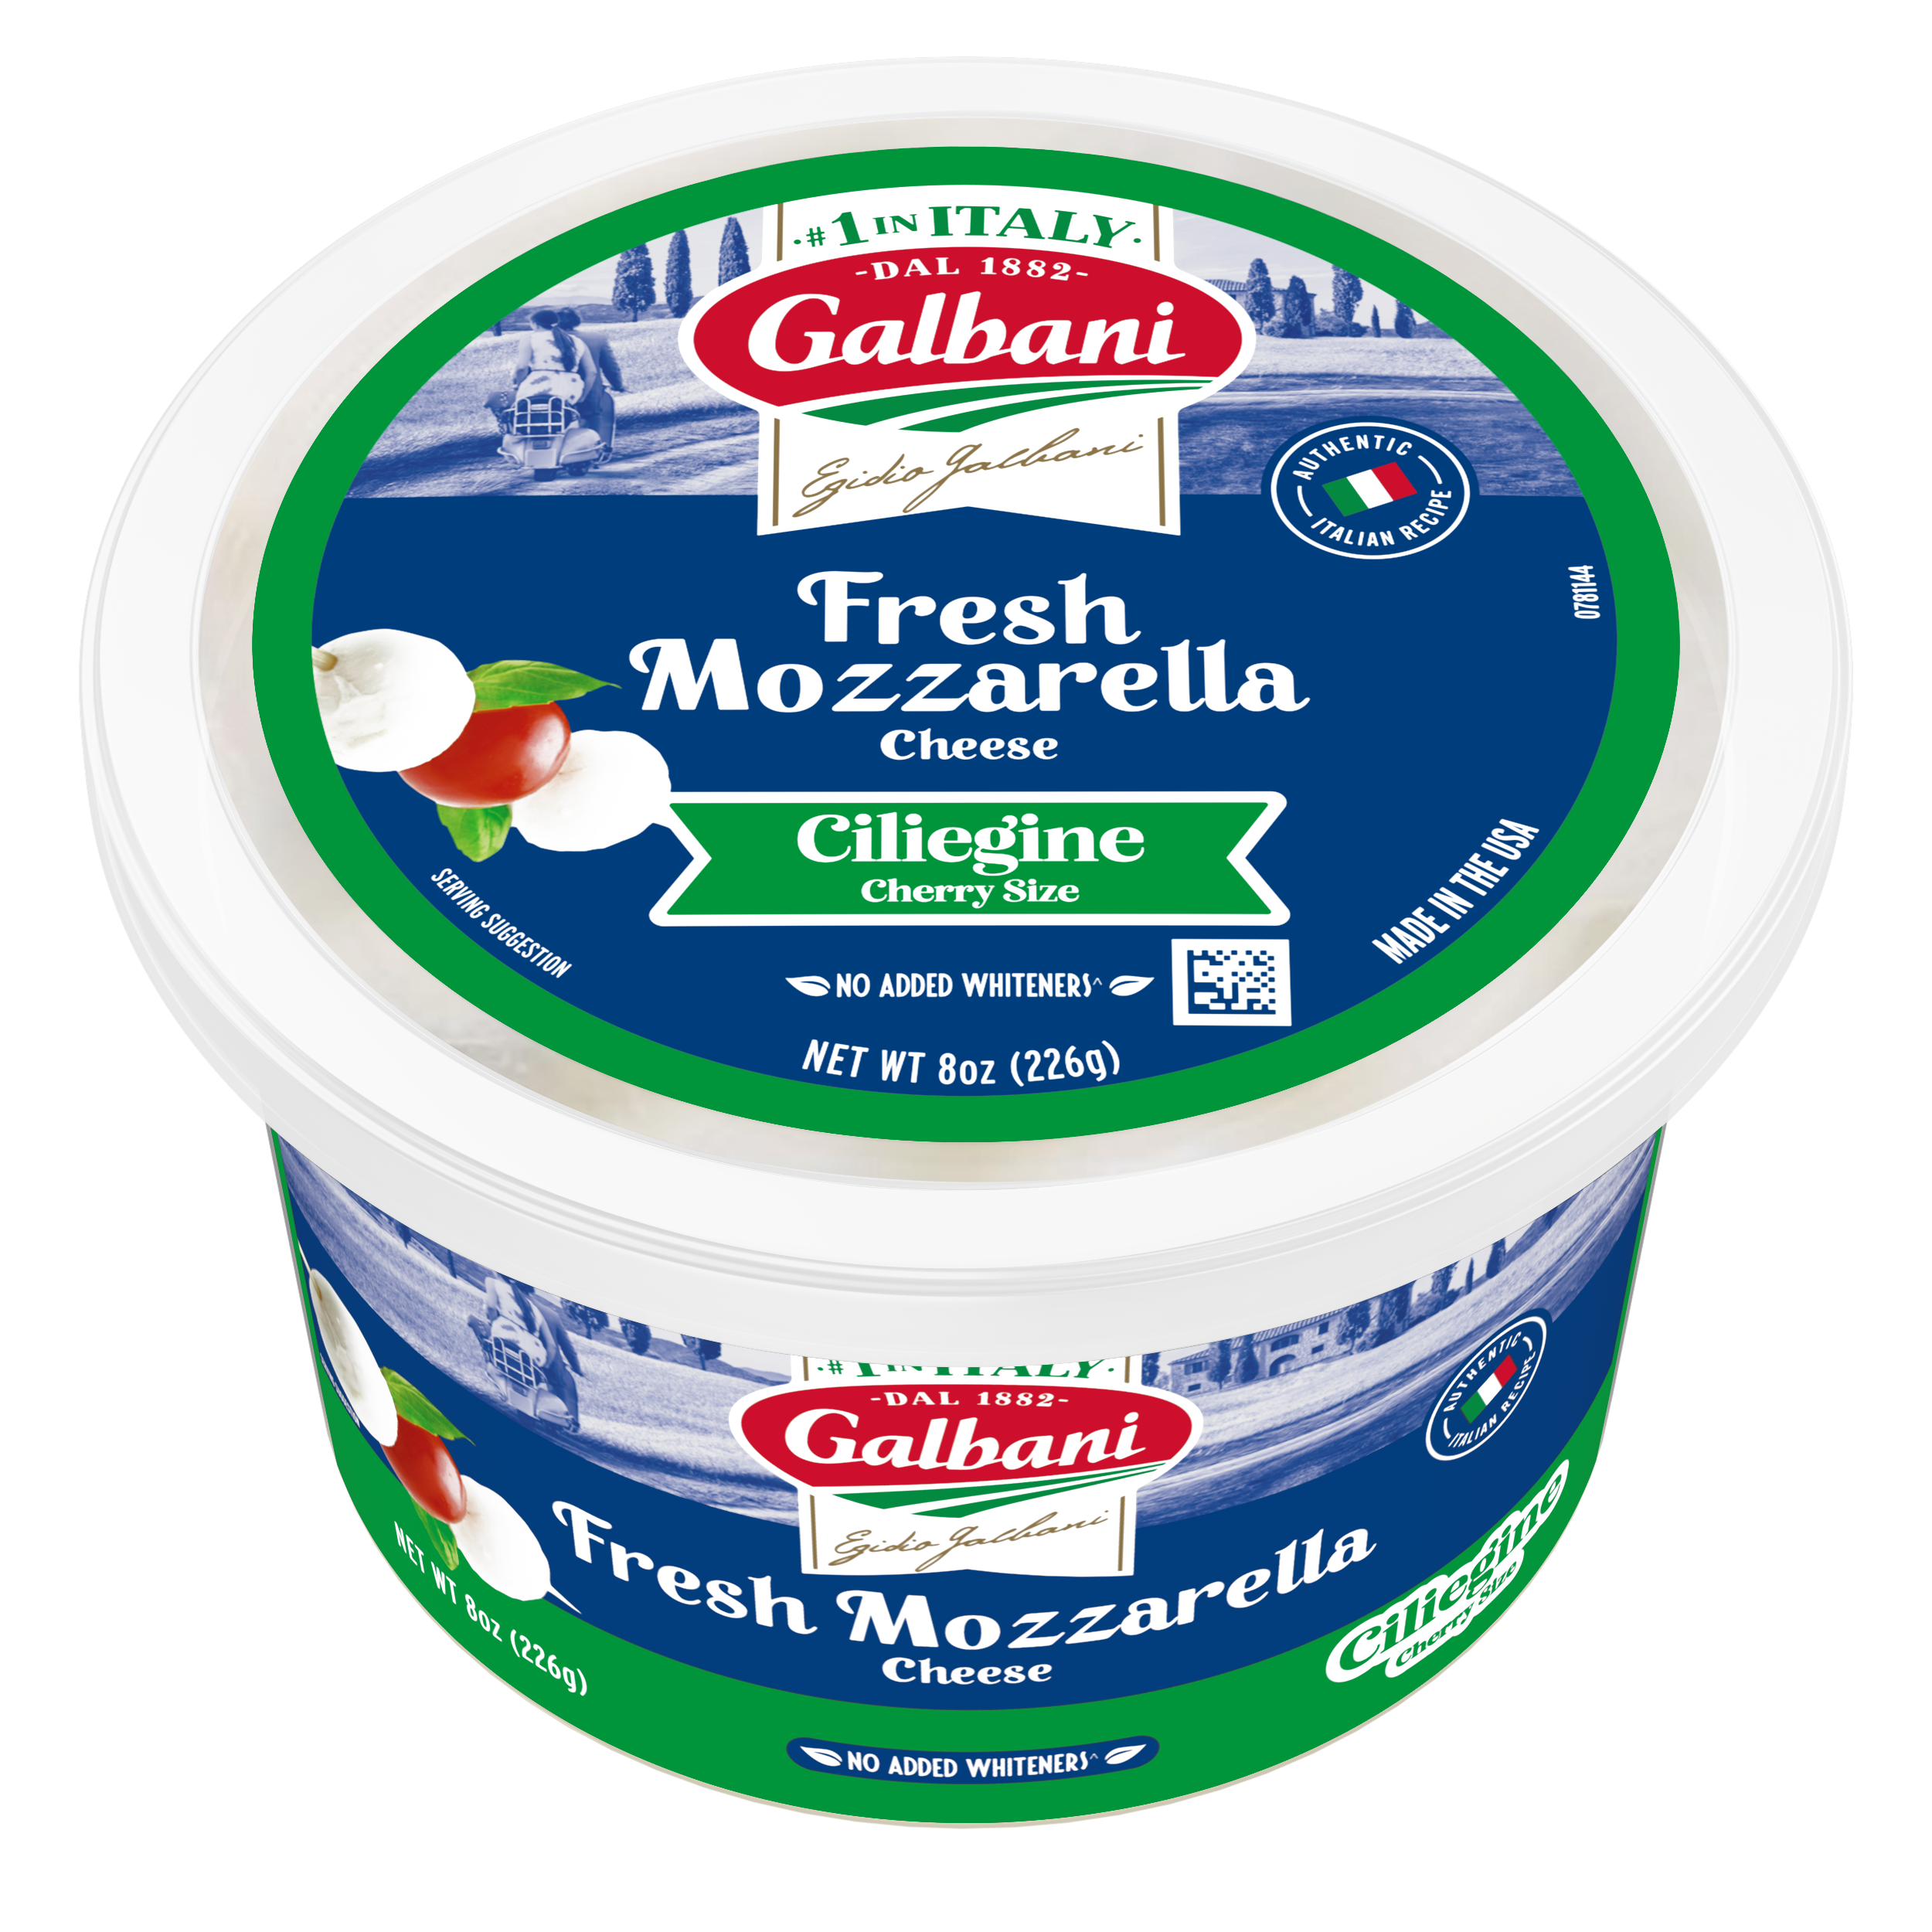 Fresh Mozzarella Ciliegine - Galbani Cheese